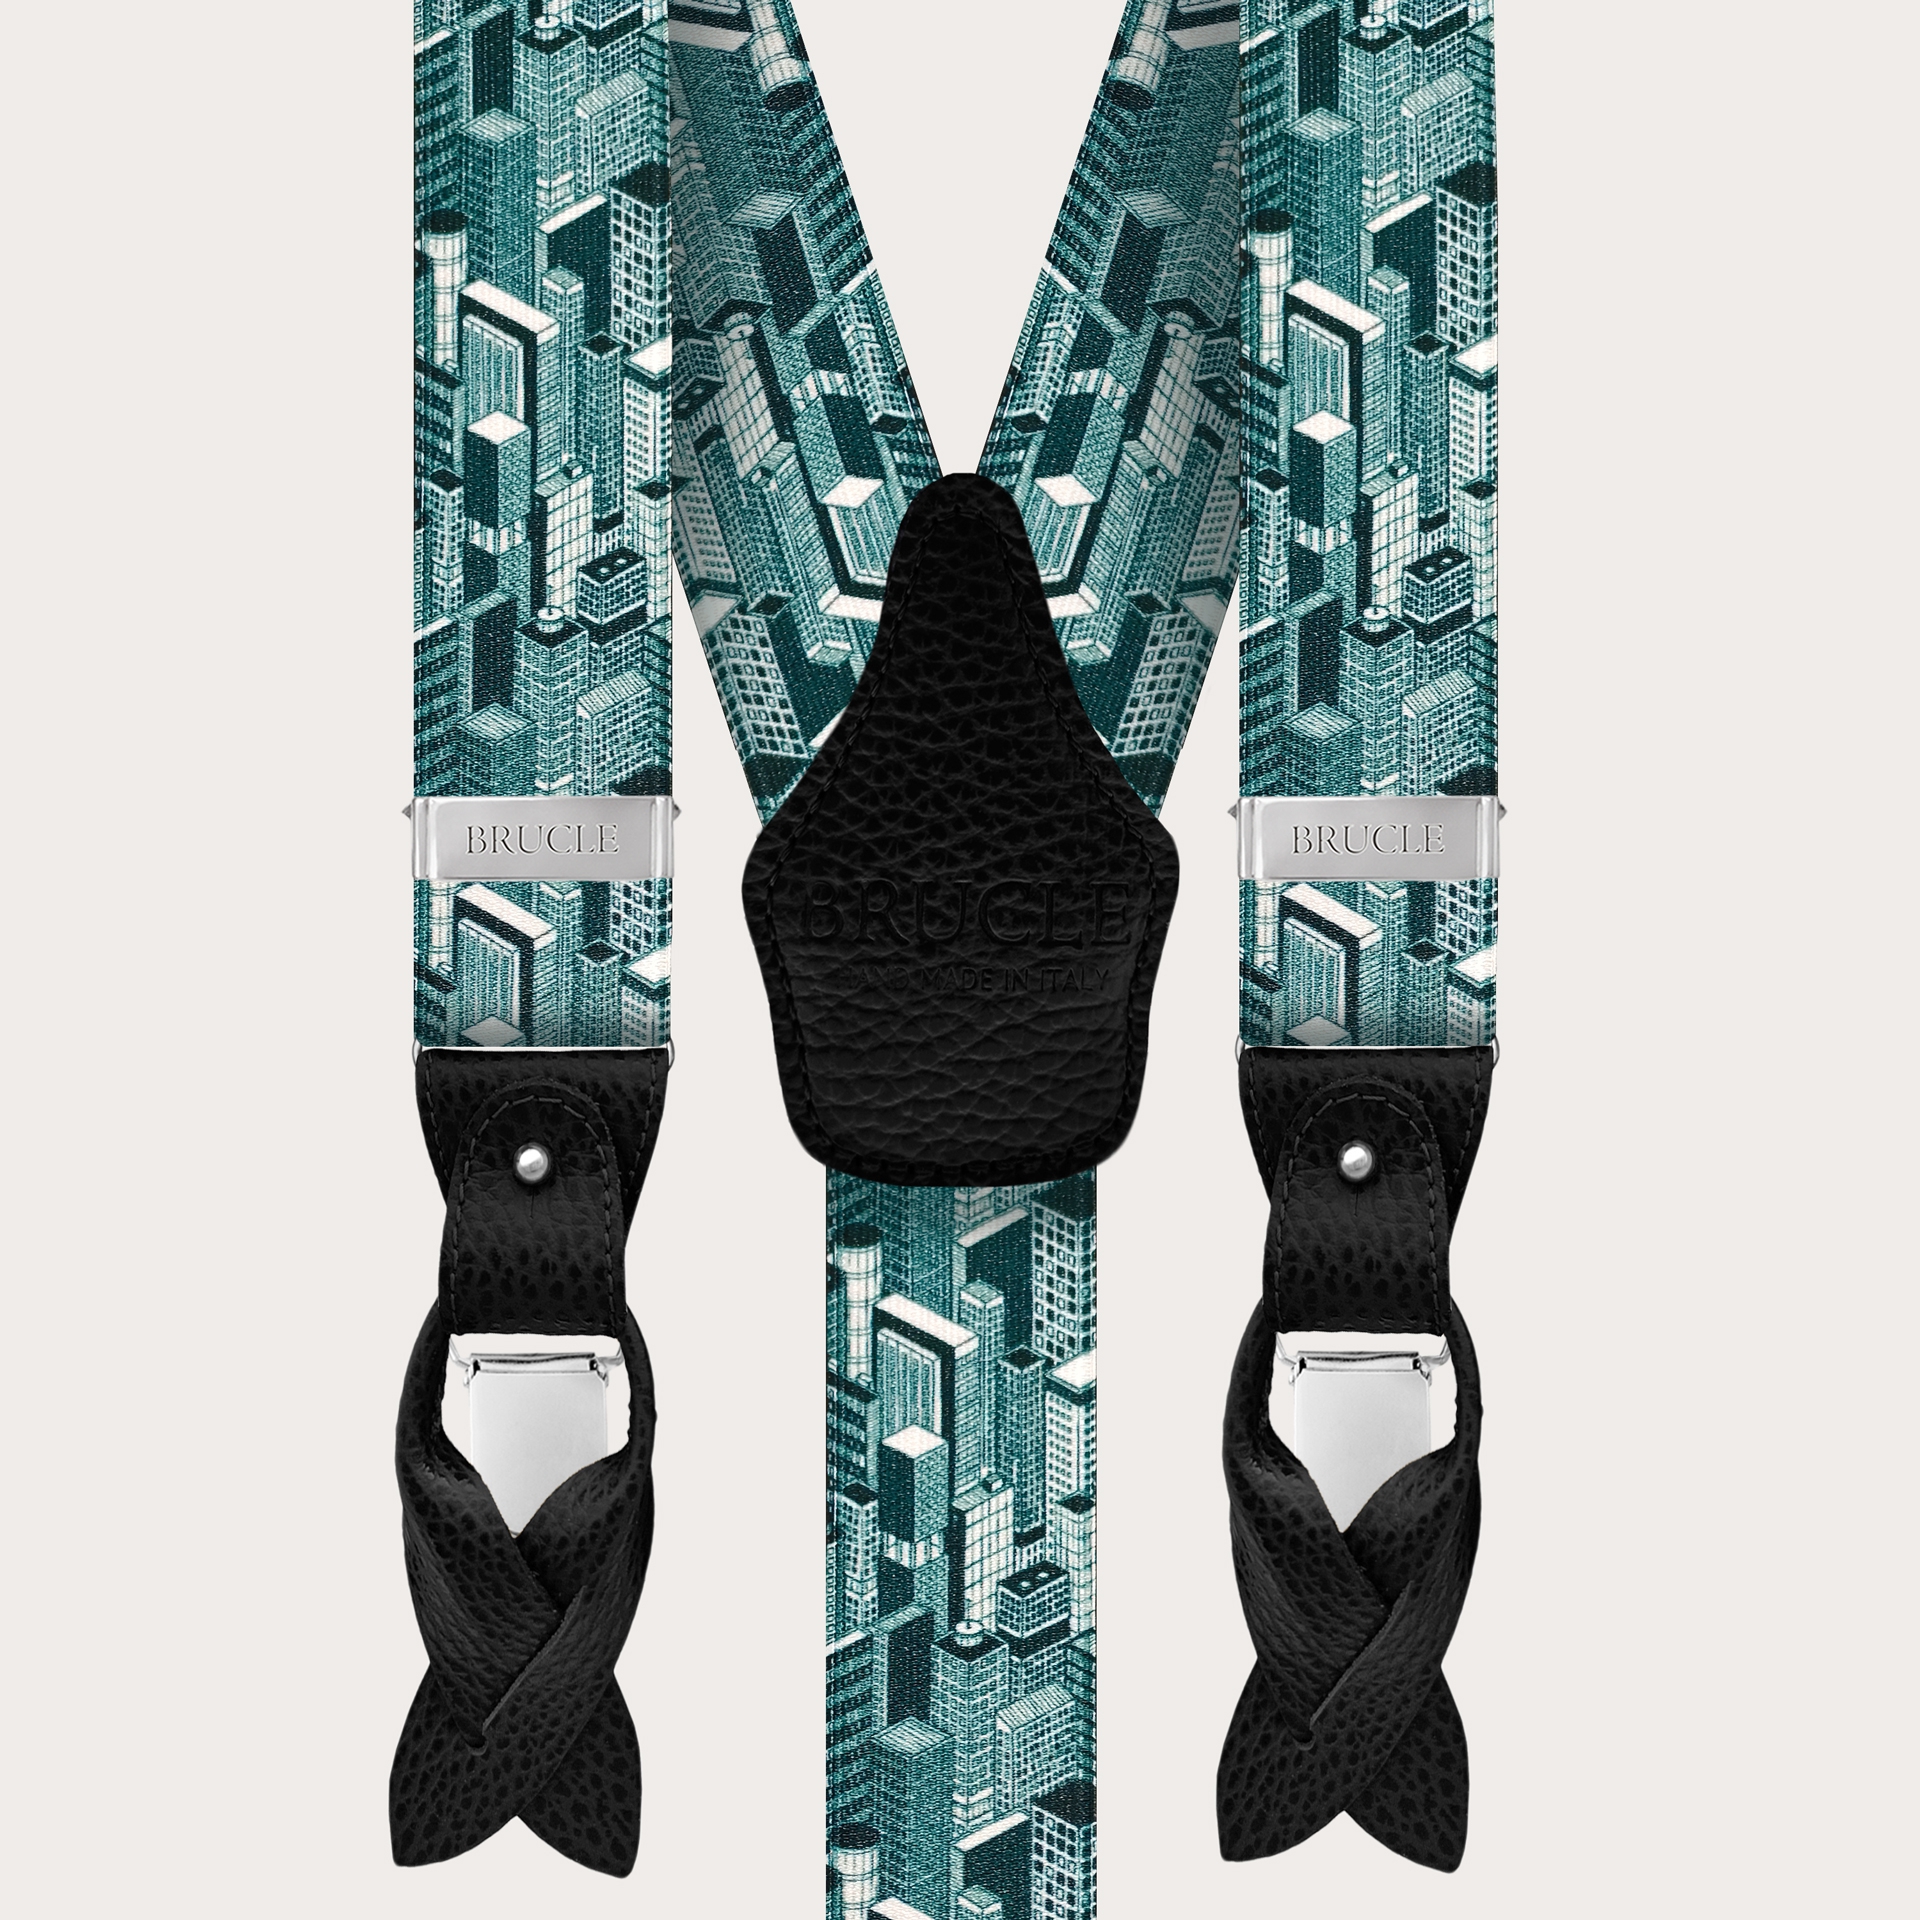 Y-shape elastic suspenders, teal skyscrapers